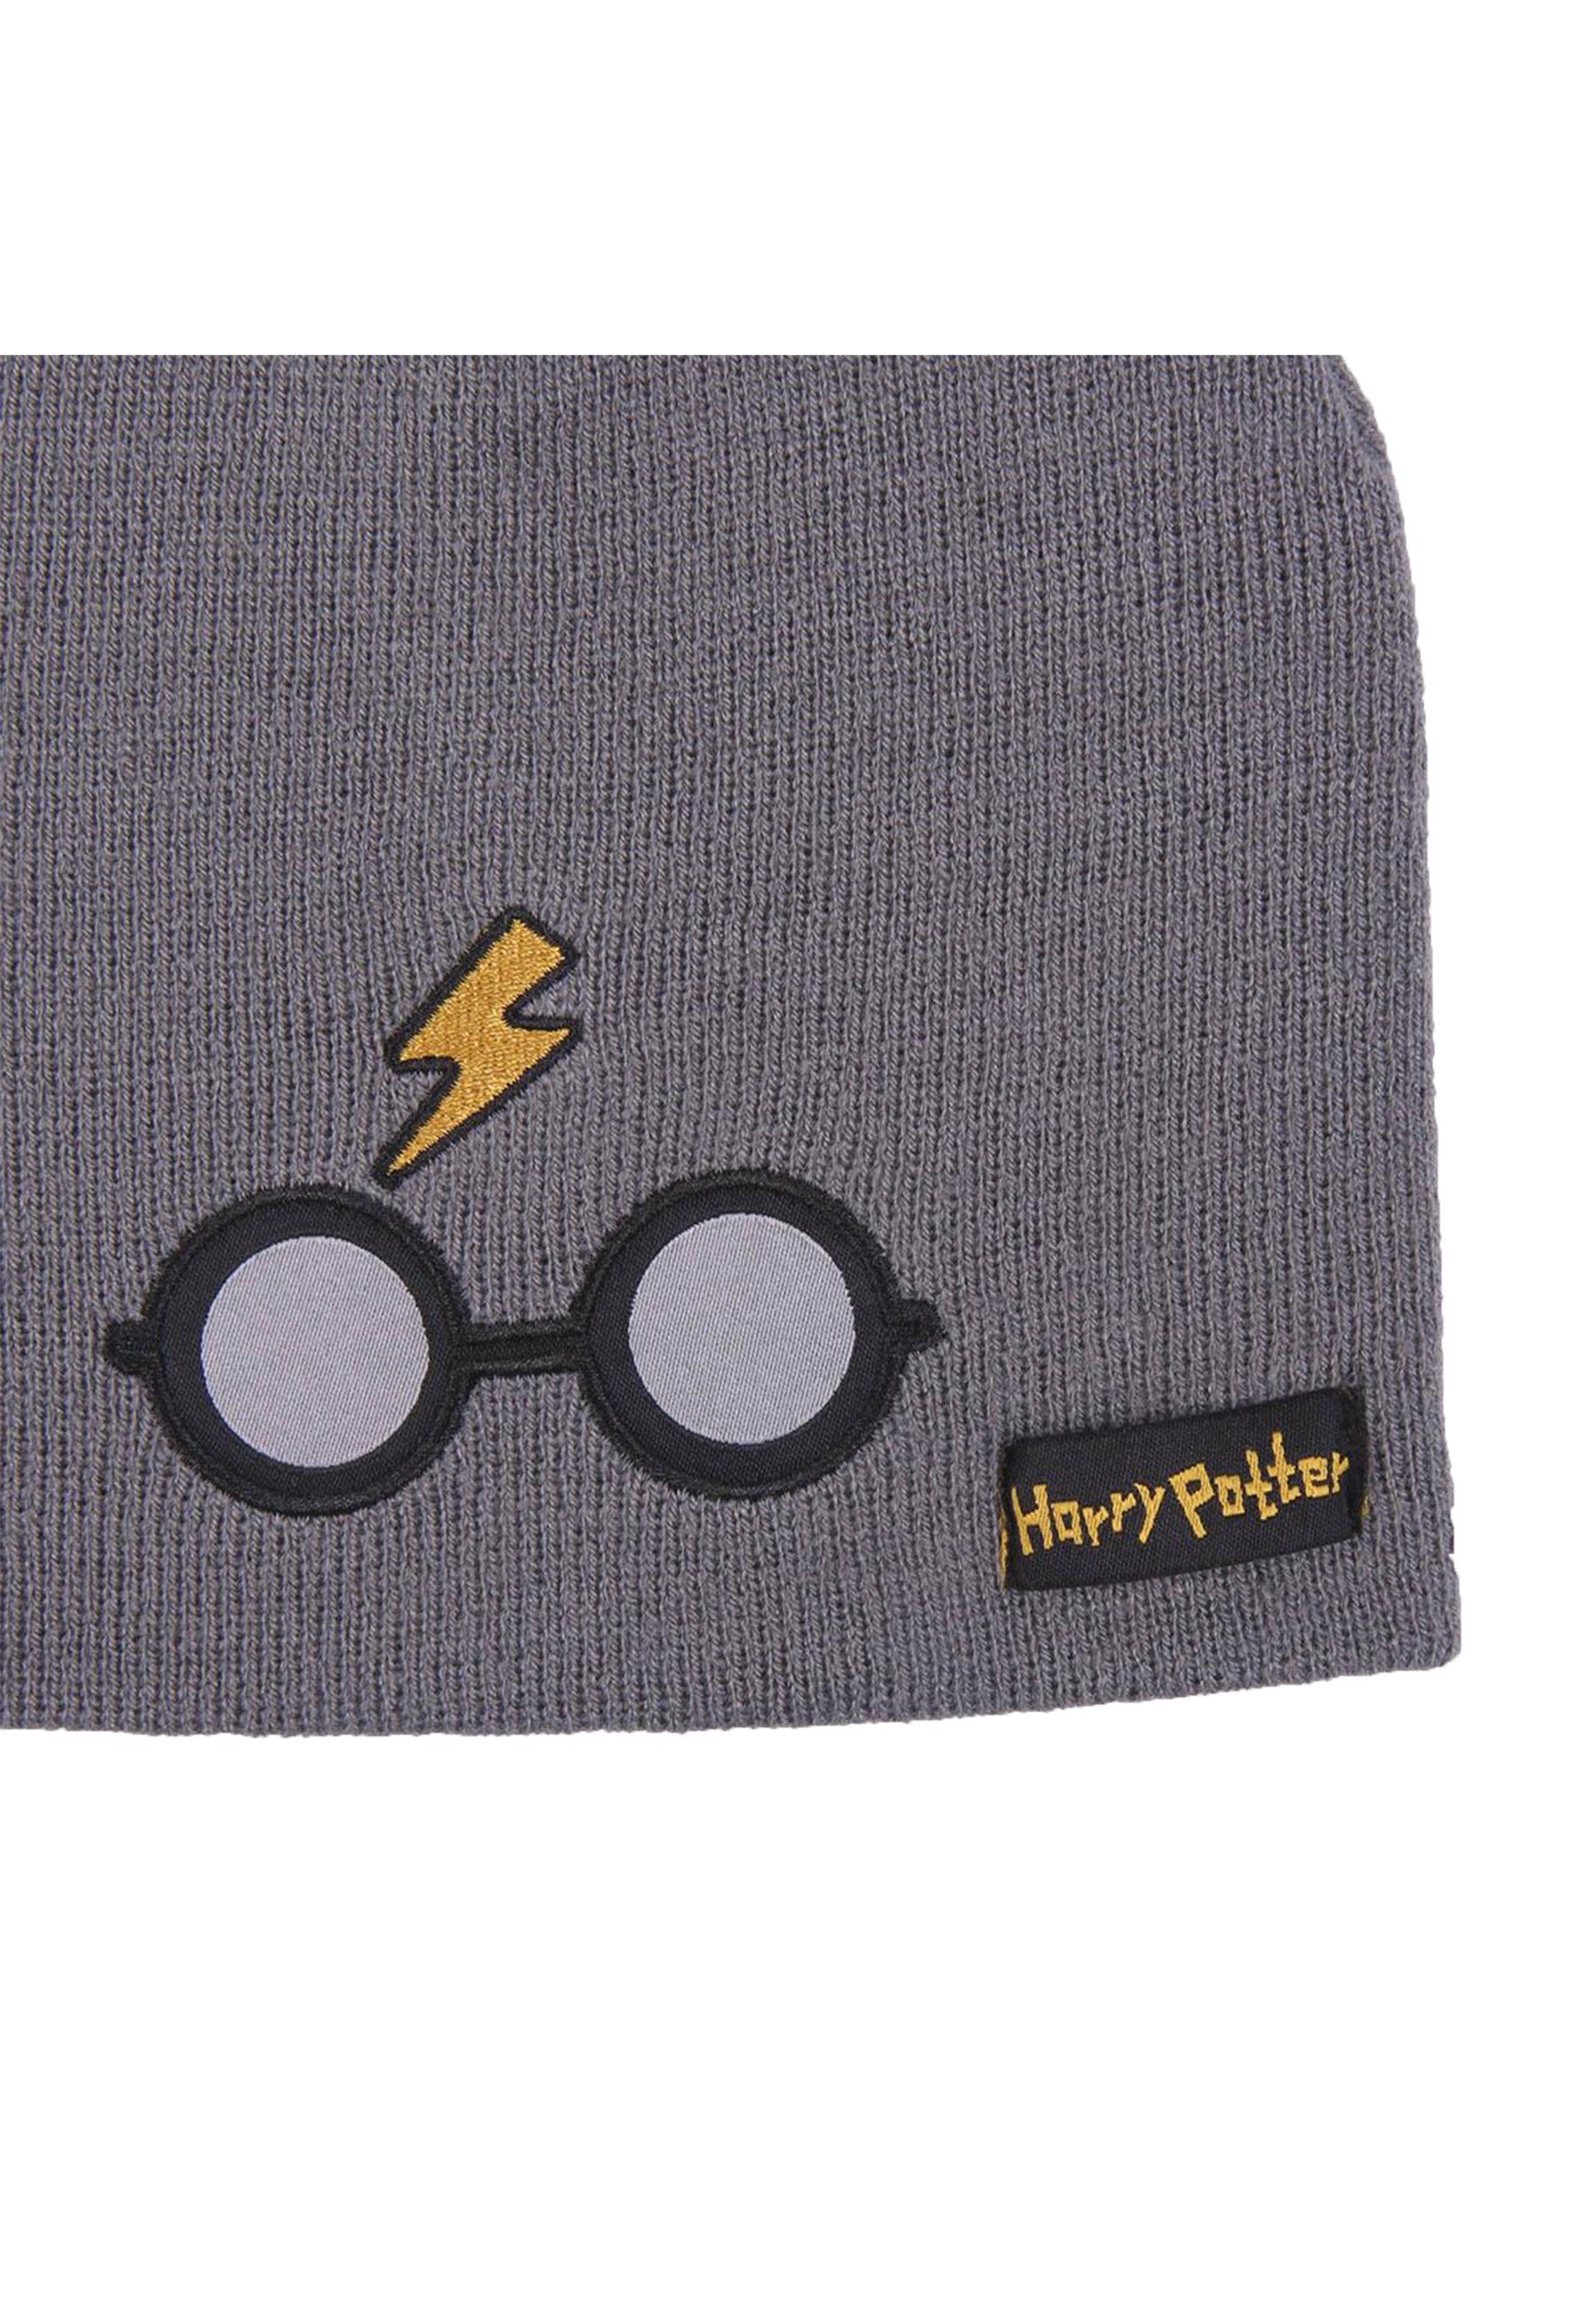 Kinder Harry Potter Winter-Beanie-Mütze Beanie Strickmützte Jungen